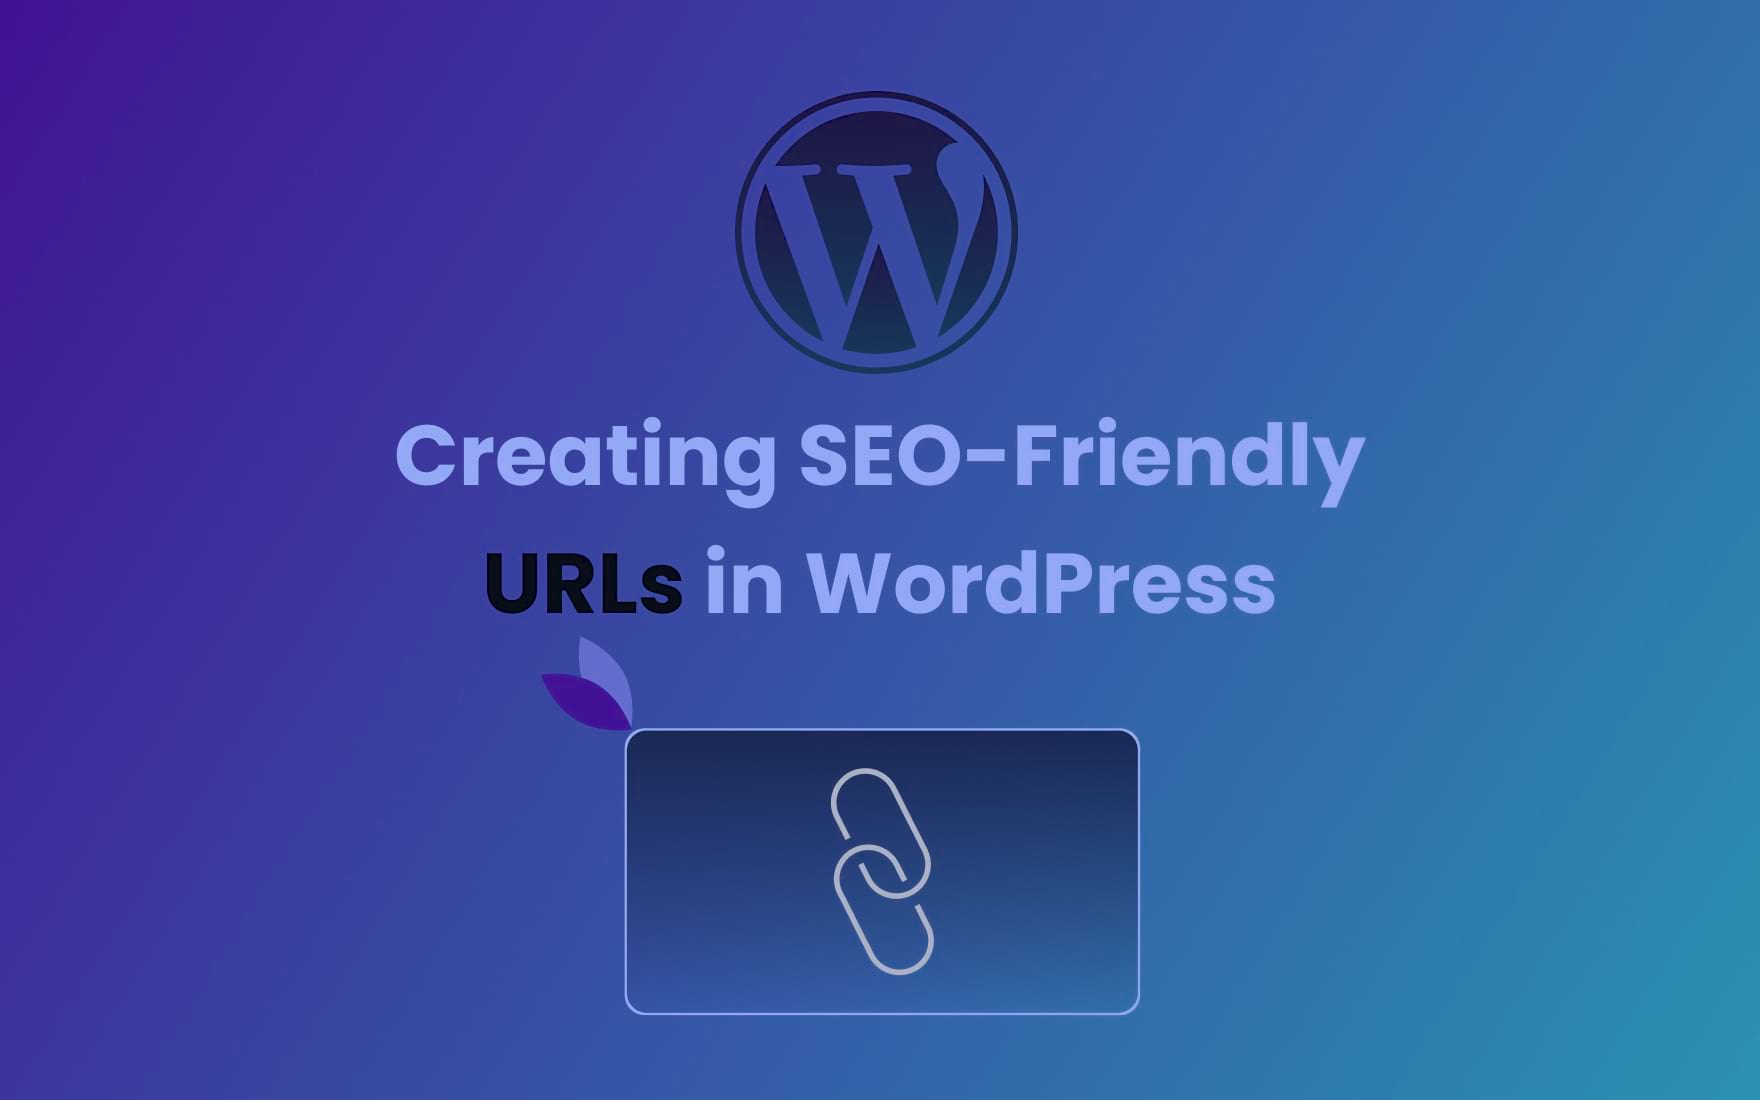 SEO-Friendly URLs in WordPress